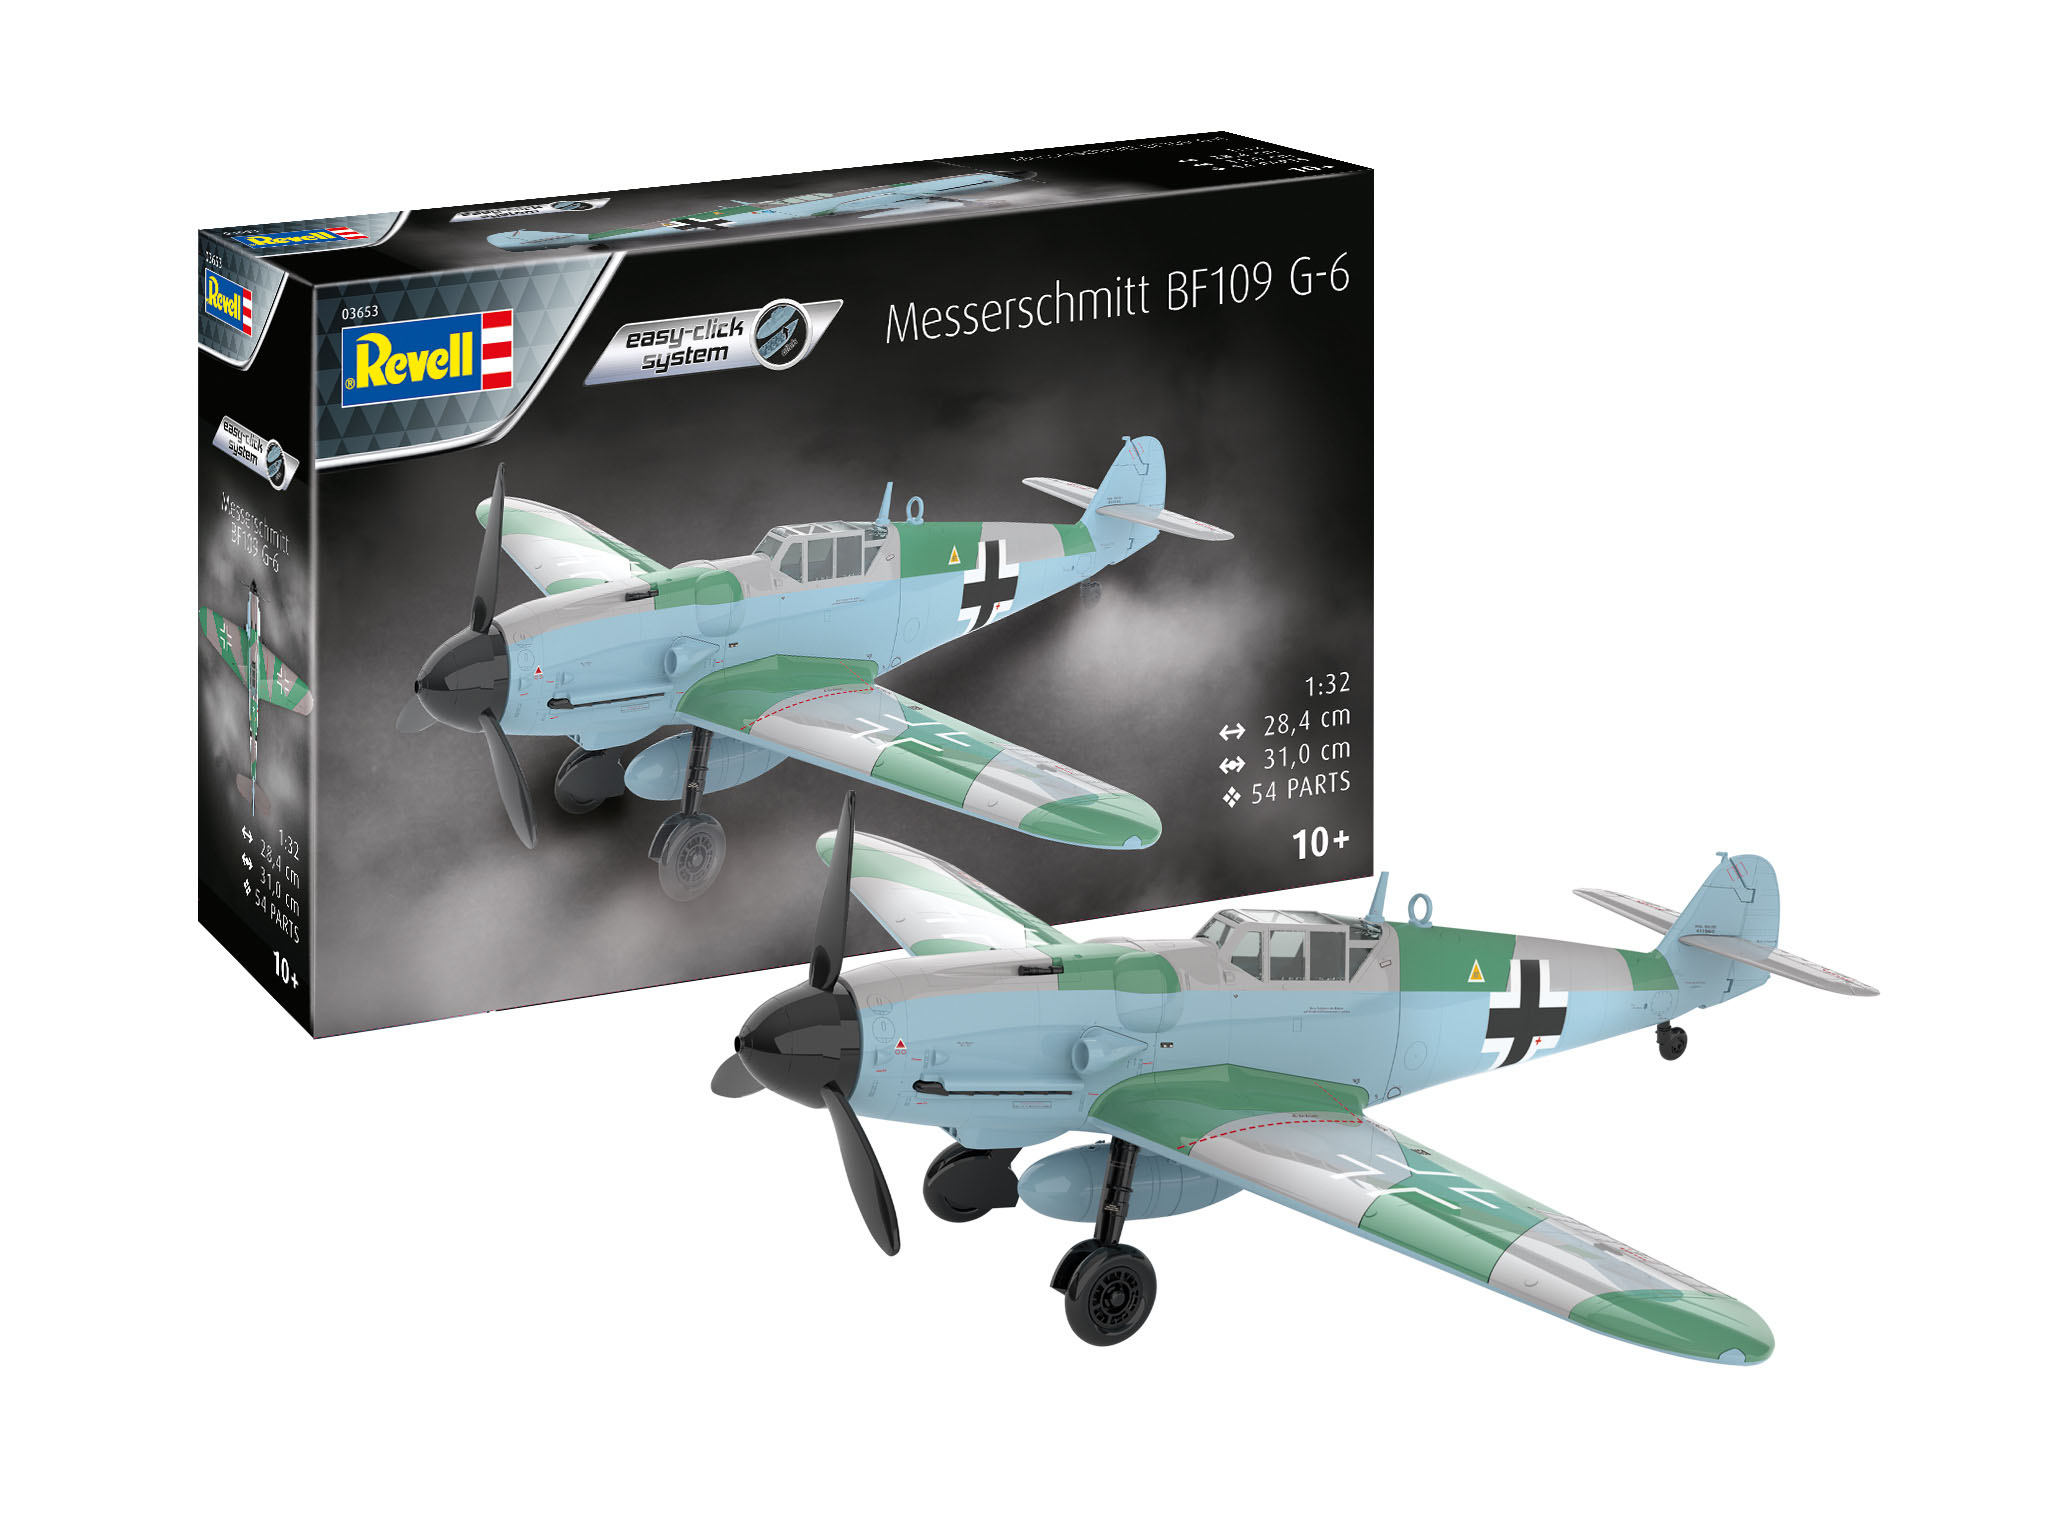 revell-03653-Messerschmitt-Bf-109-G-6-easy-click-Steckbausatz-zu-Stecken-ohne-Kleben-ohne-Malen